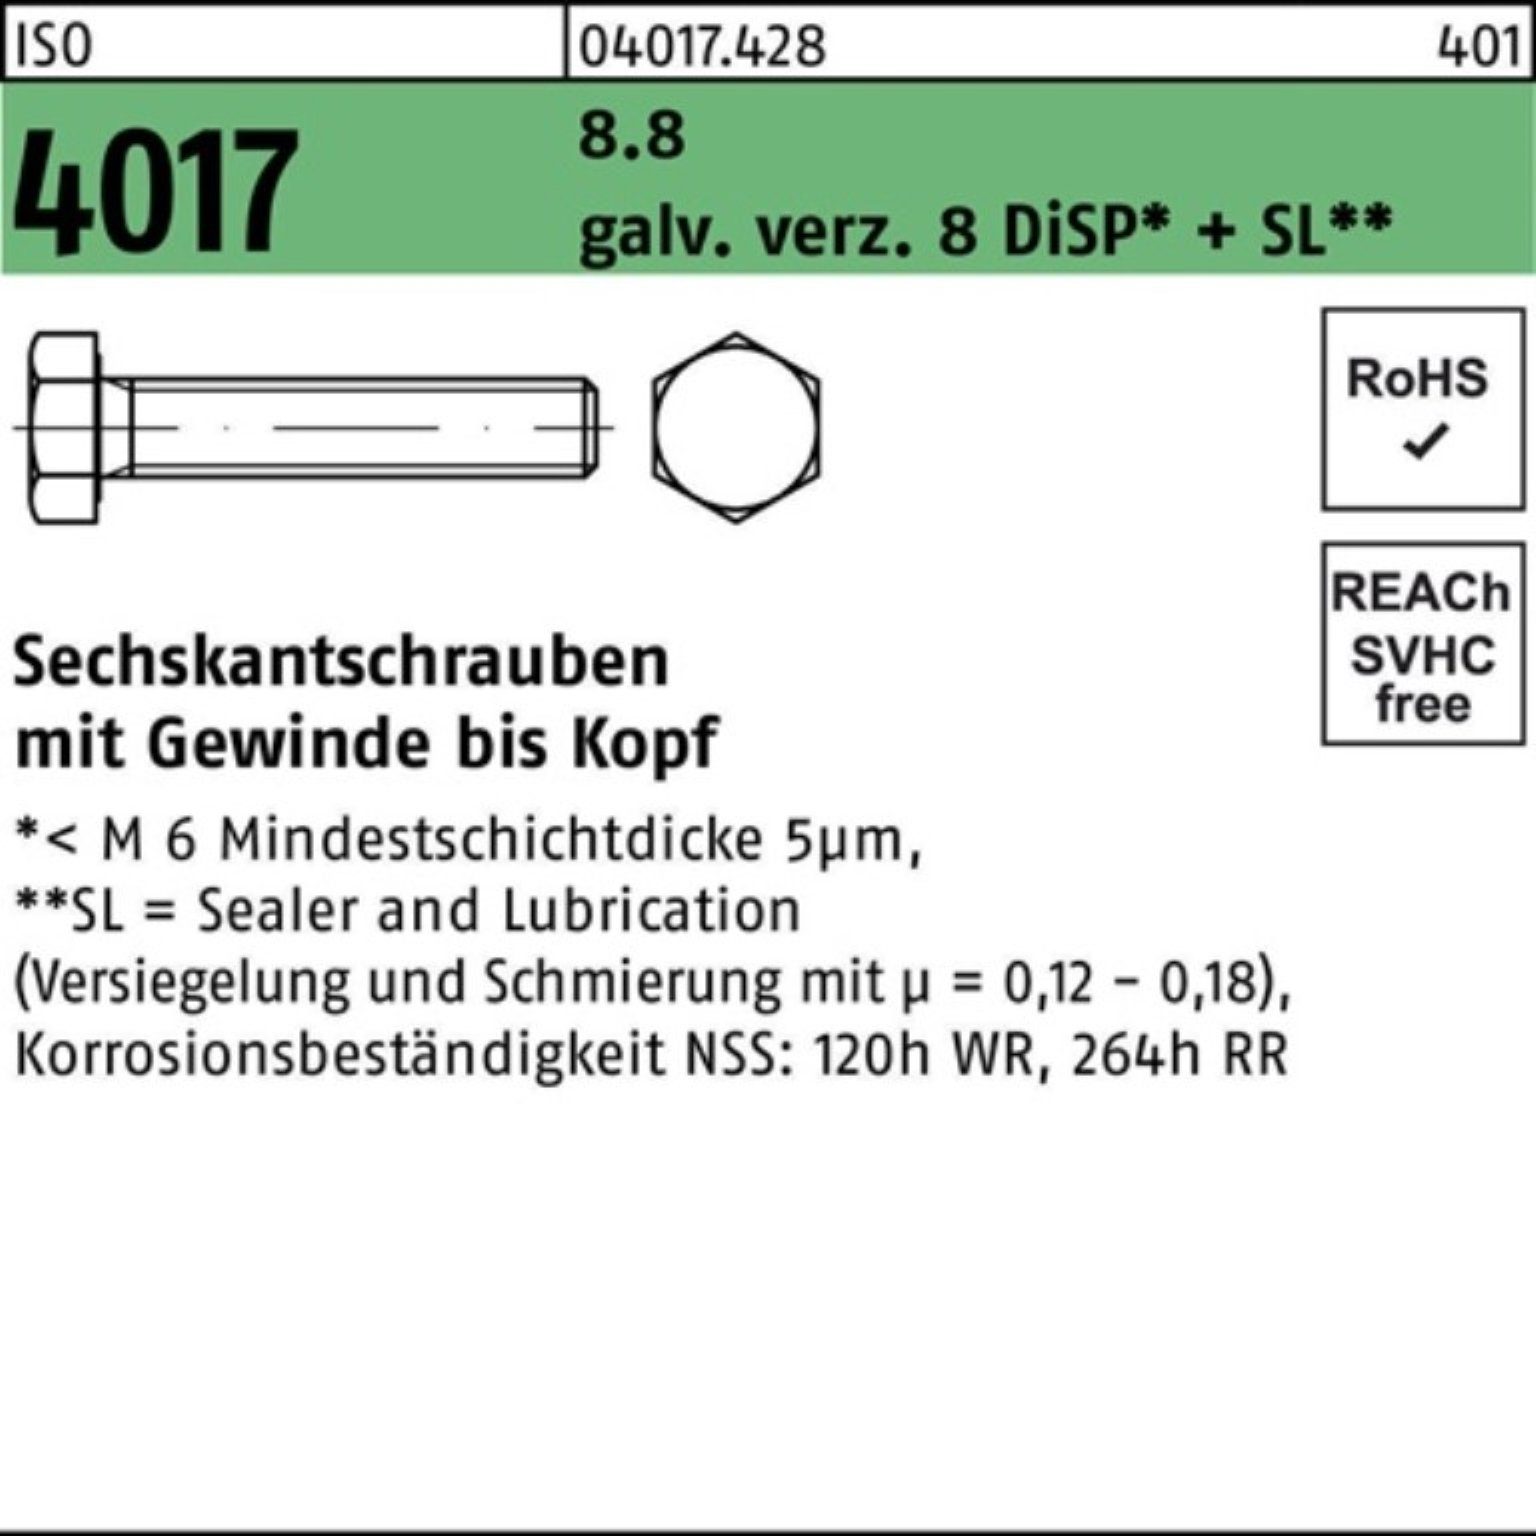 Bufab Sechskantschraube 500er Pack Sechskantschraube ISO 4017 VG M3x 10 8.8 galv.verz. 8 DiSP+